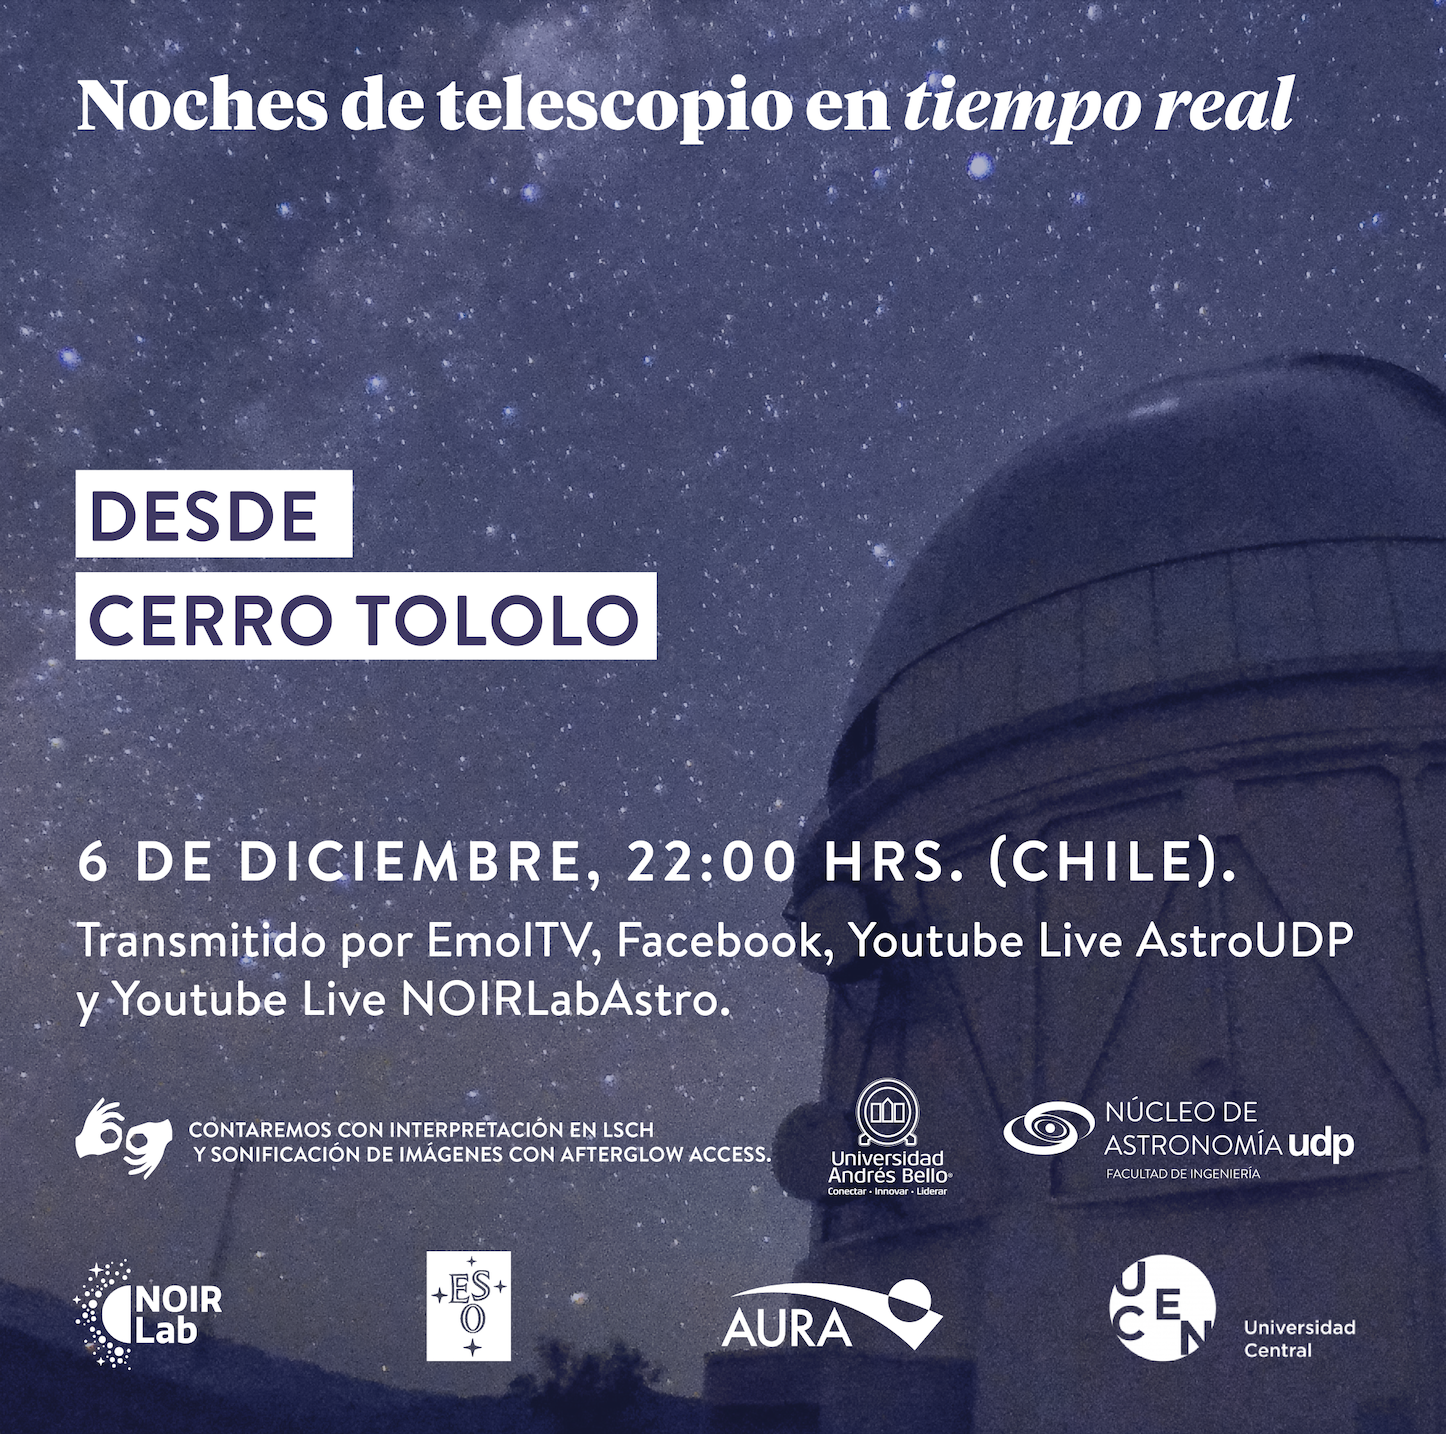 Noches de Telescopio desde Cerro Tololo